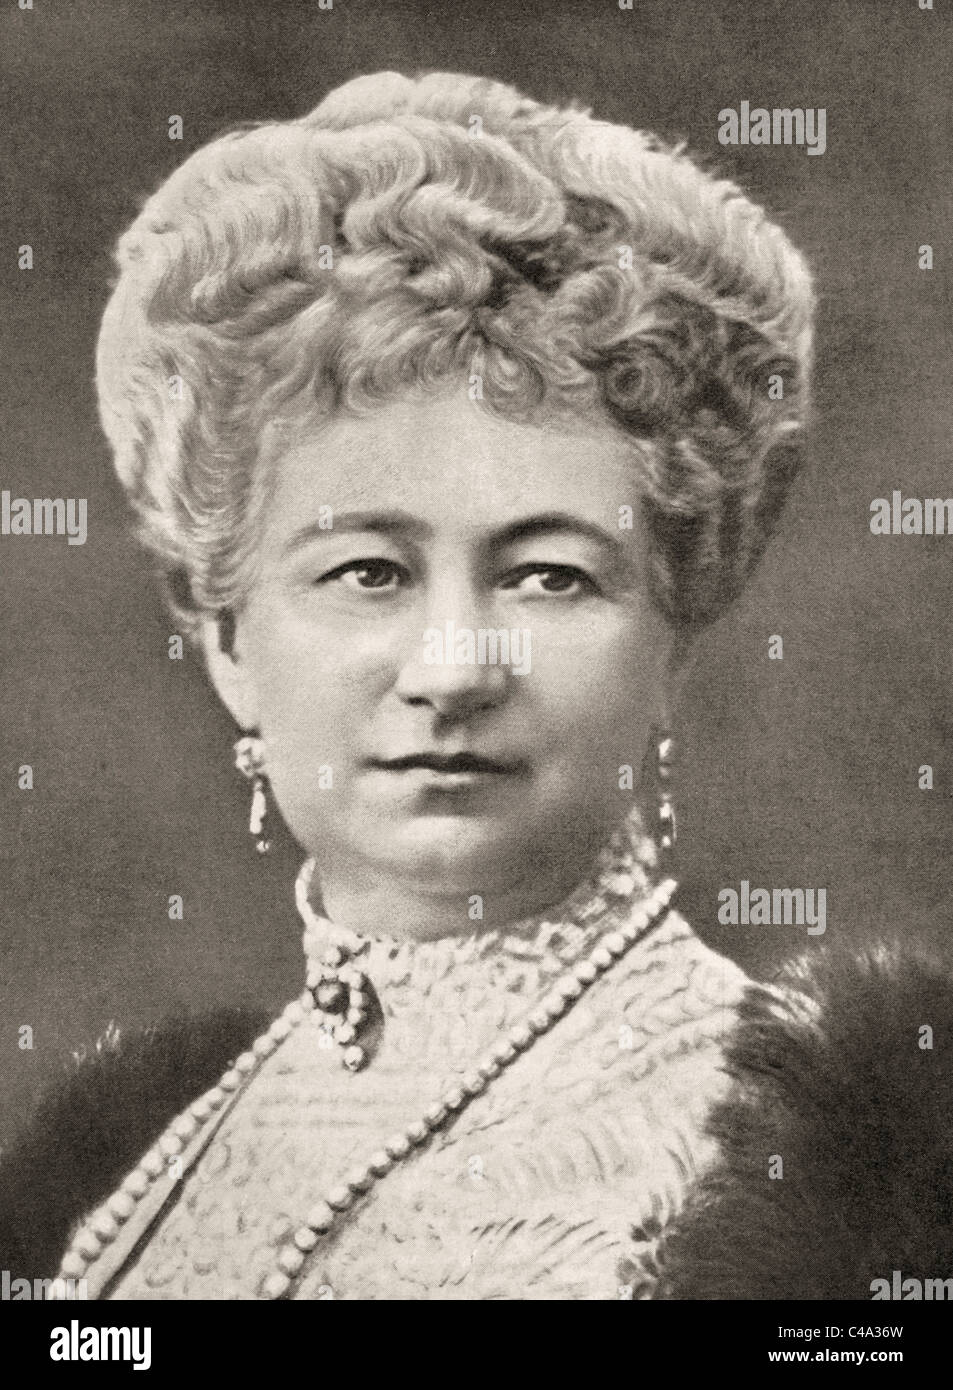 Augusta Victoria de Schleswig-Holstein, 1858 - 1921. Dernière Impératrice allemande et Reine de Prusse. Banque D'Images